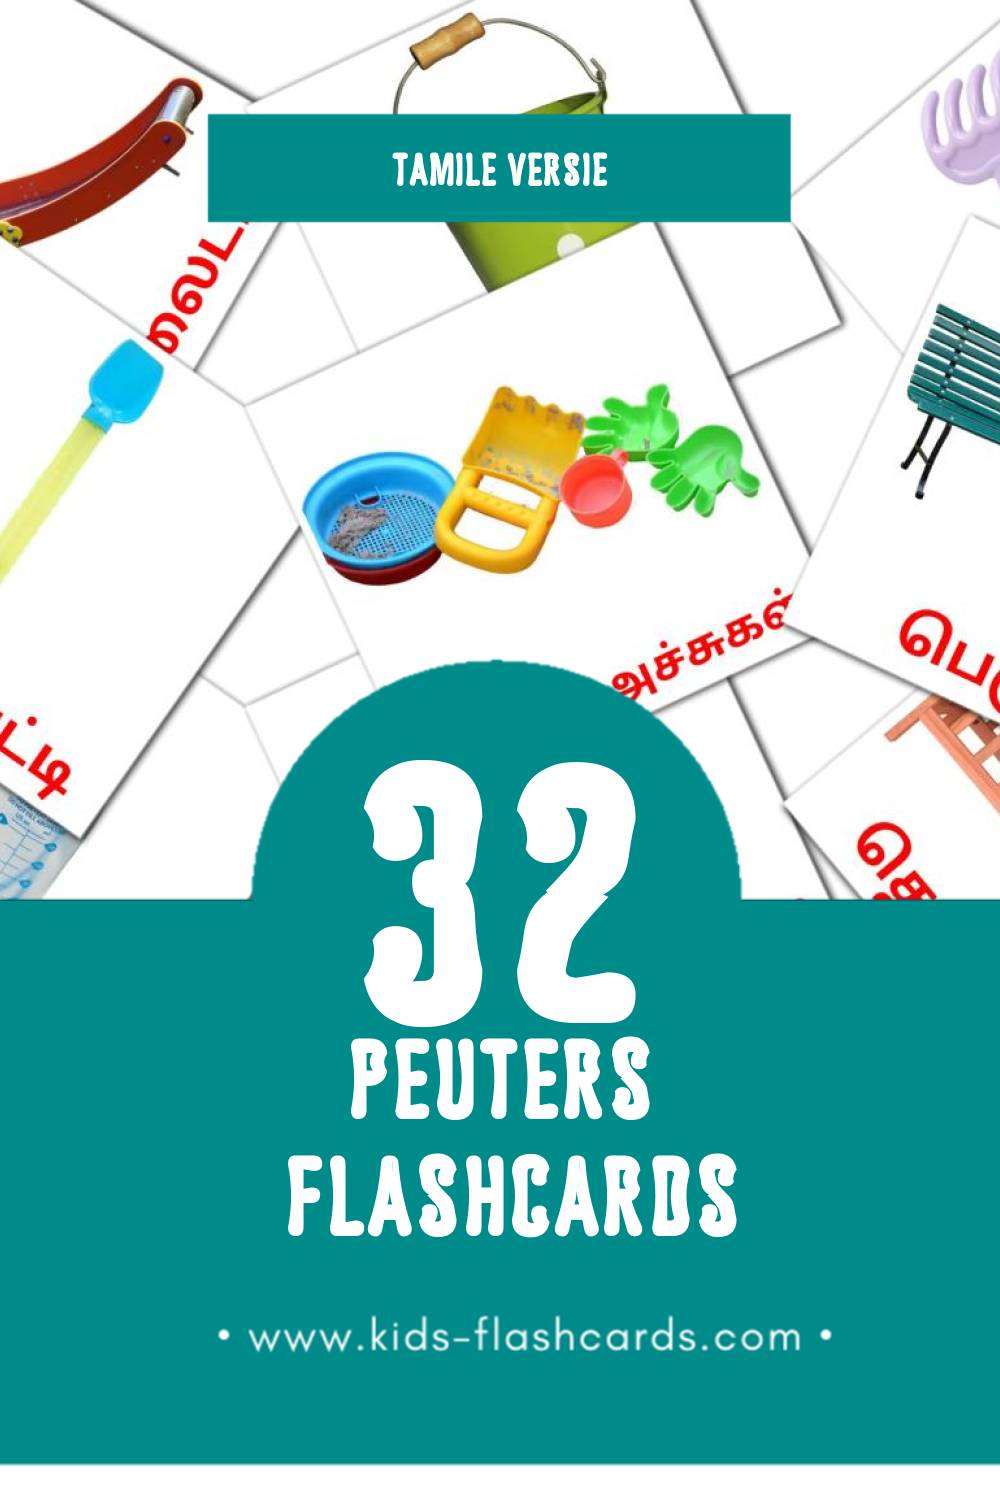 Visuele குழந்தை Flashcards voor Kleuters (32 kaarten in het Tamil)